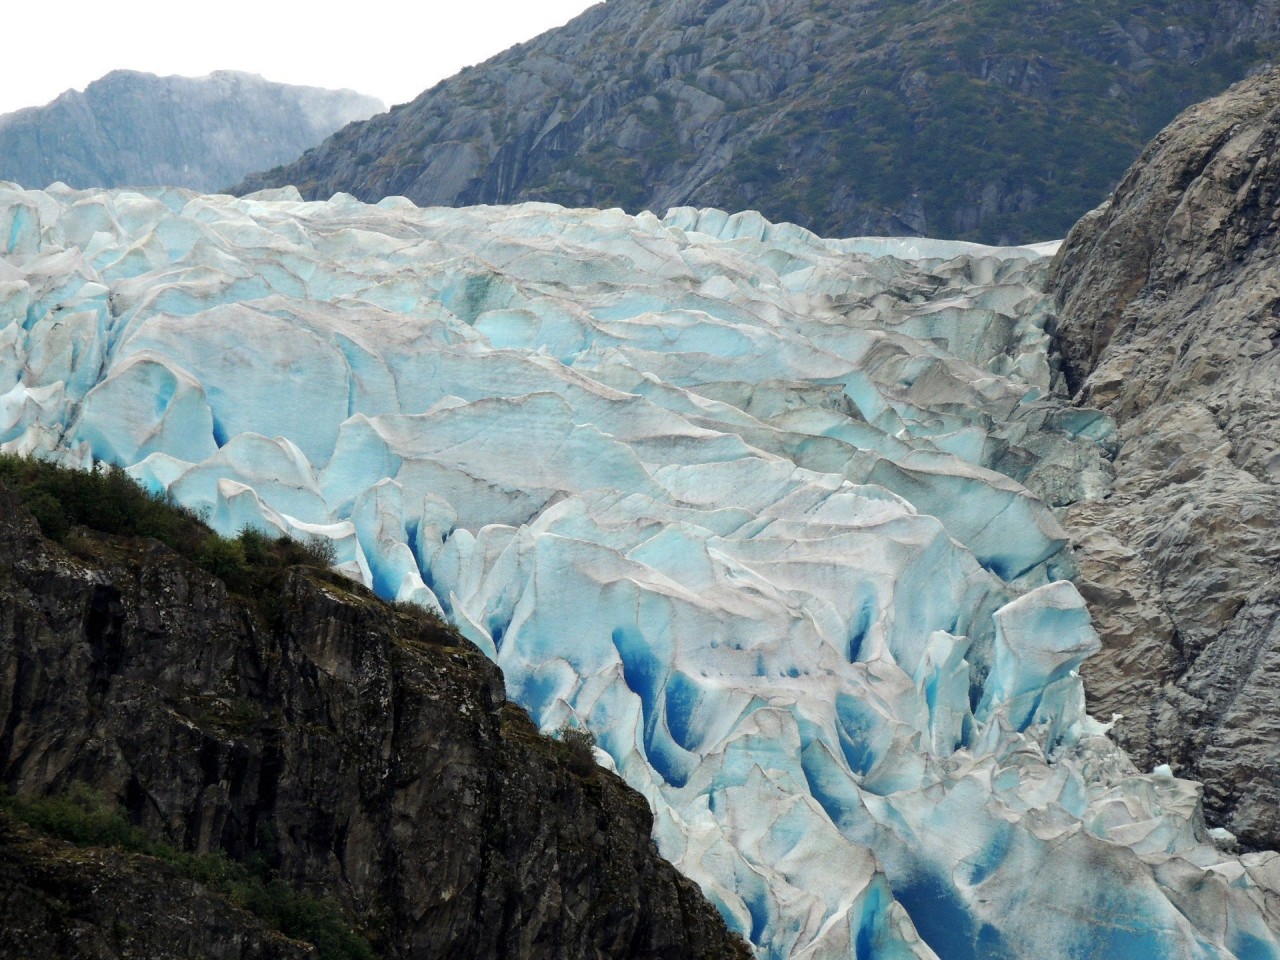 Ледник Герберт, Аляска. Похож на верхушку лимонного пирога с меренгой красивые места, красота, ледник, ледники, природа, путешественникам на заметку, туристу на заметку, фото природы